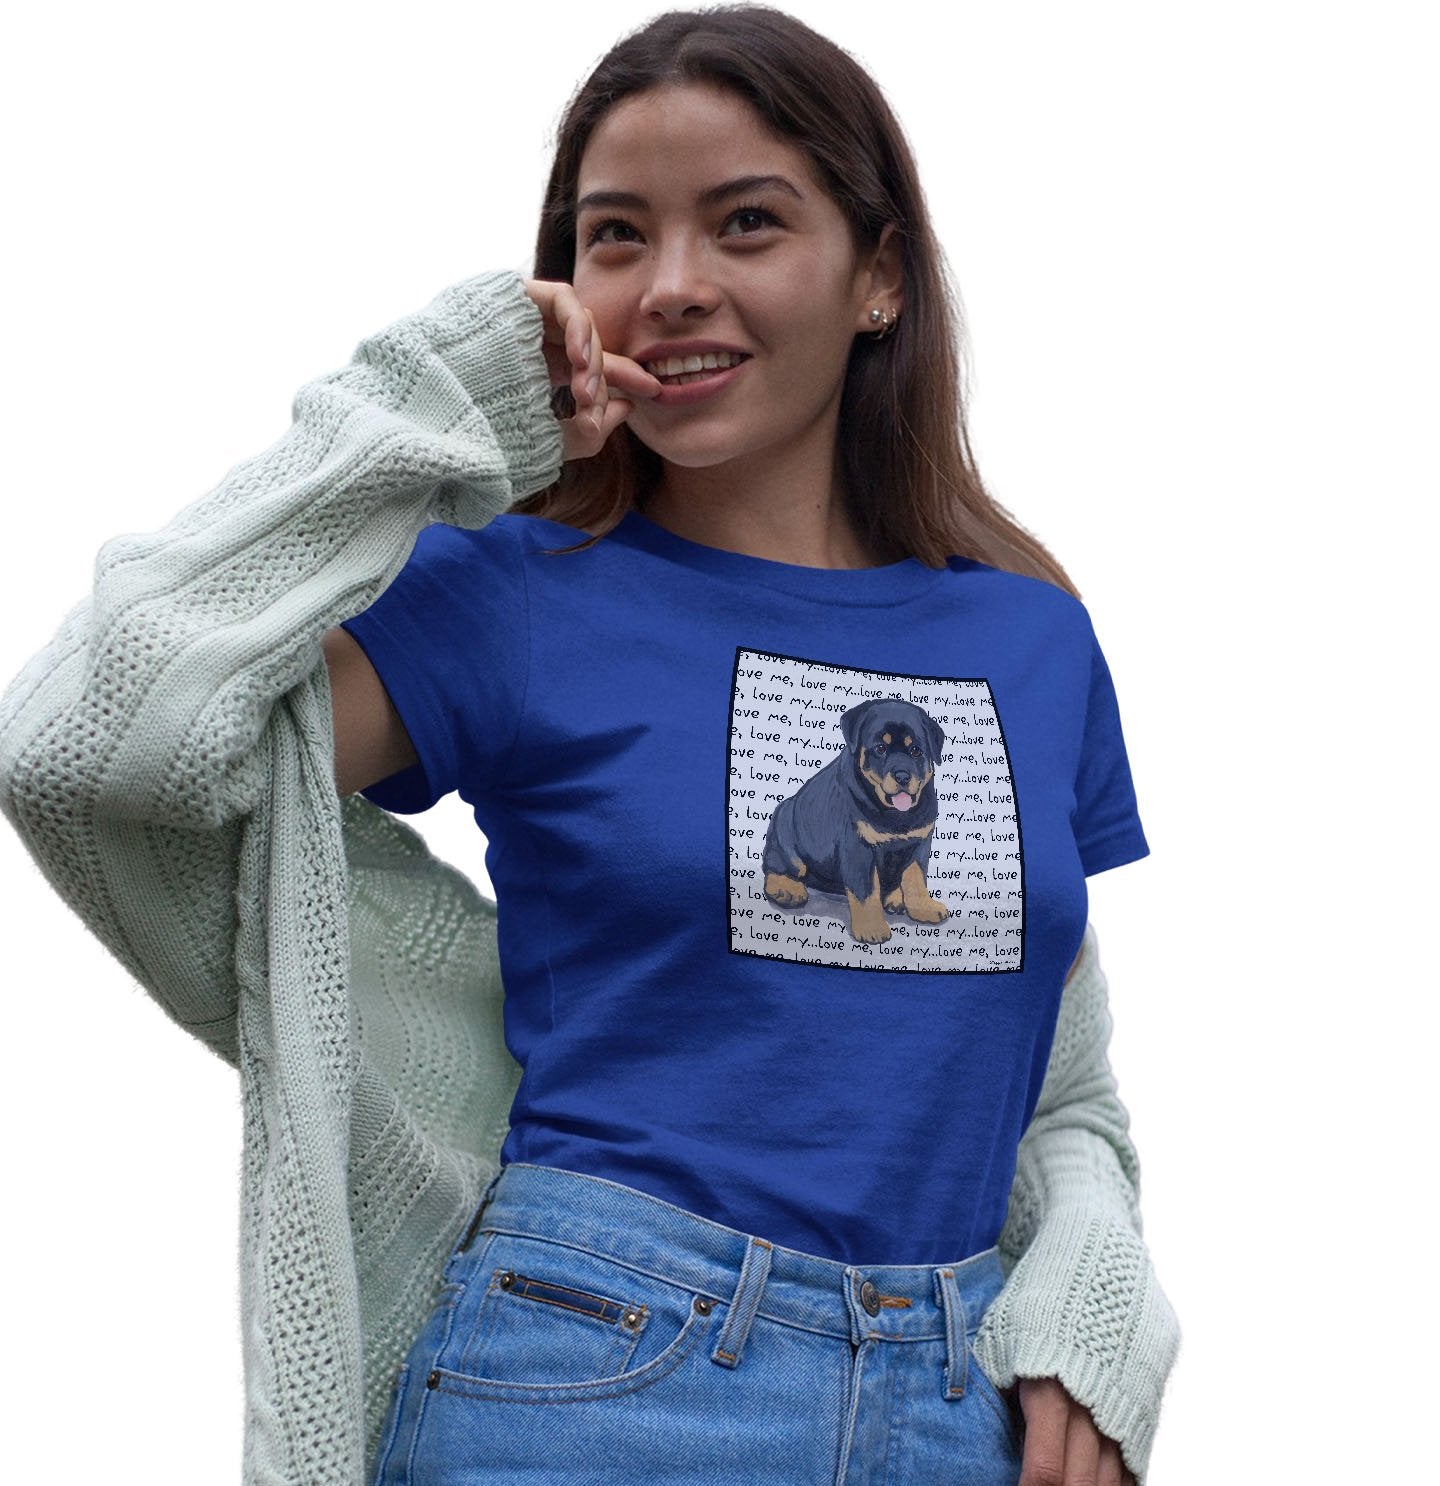 Rottweiler Puppy Love Text - Women's Fitted T-Shirt